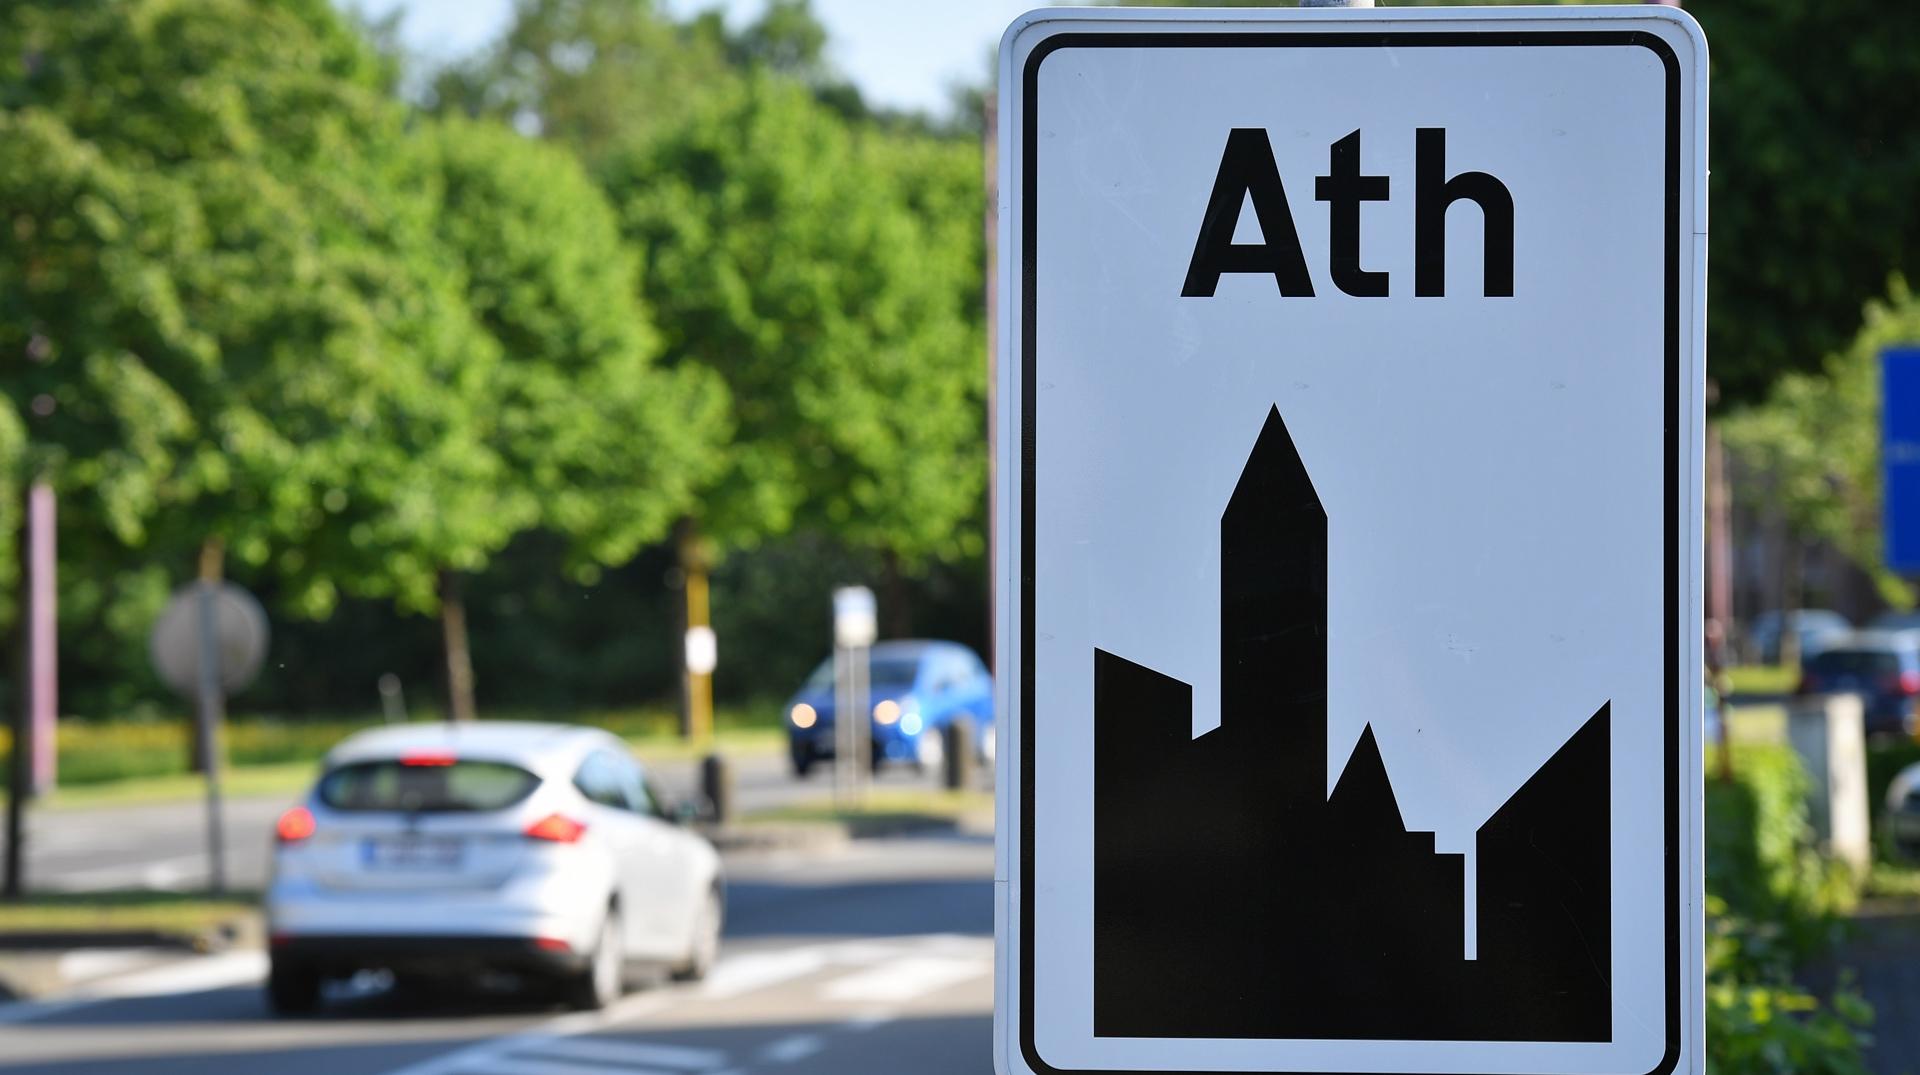 La ville d’Ath lance un appel à projets dans le cadre de son premier budget participatif